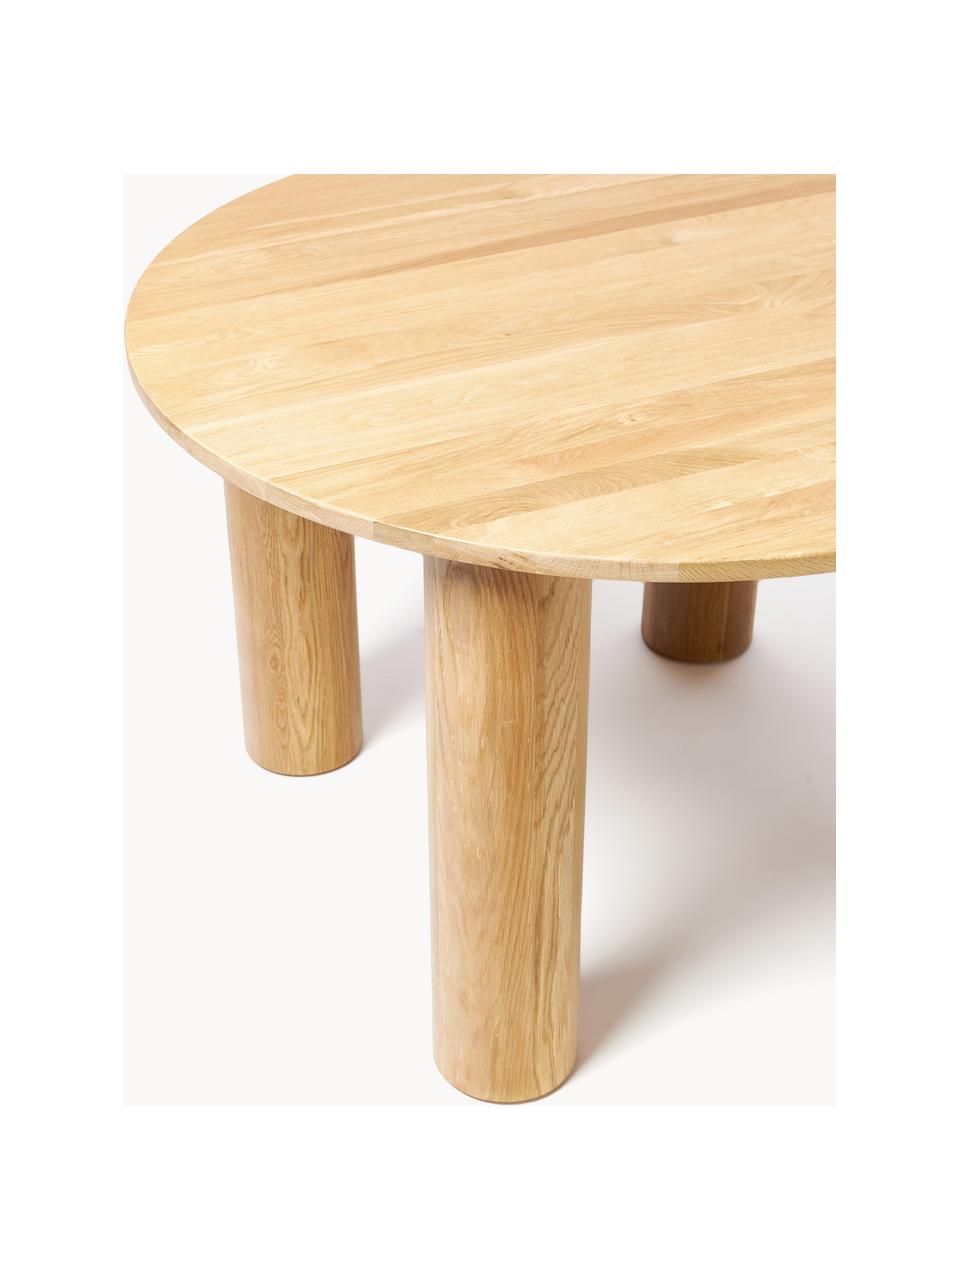 Table ronde en chêne Ohana, Ø 120 cm, Bois de chêne, huilé, certifié FSC

Ce produit est fabriqué à partir de bois certifié FSC® et issu d'une exploitation durable, Chêne clair huilé, Ø 120 cm